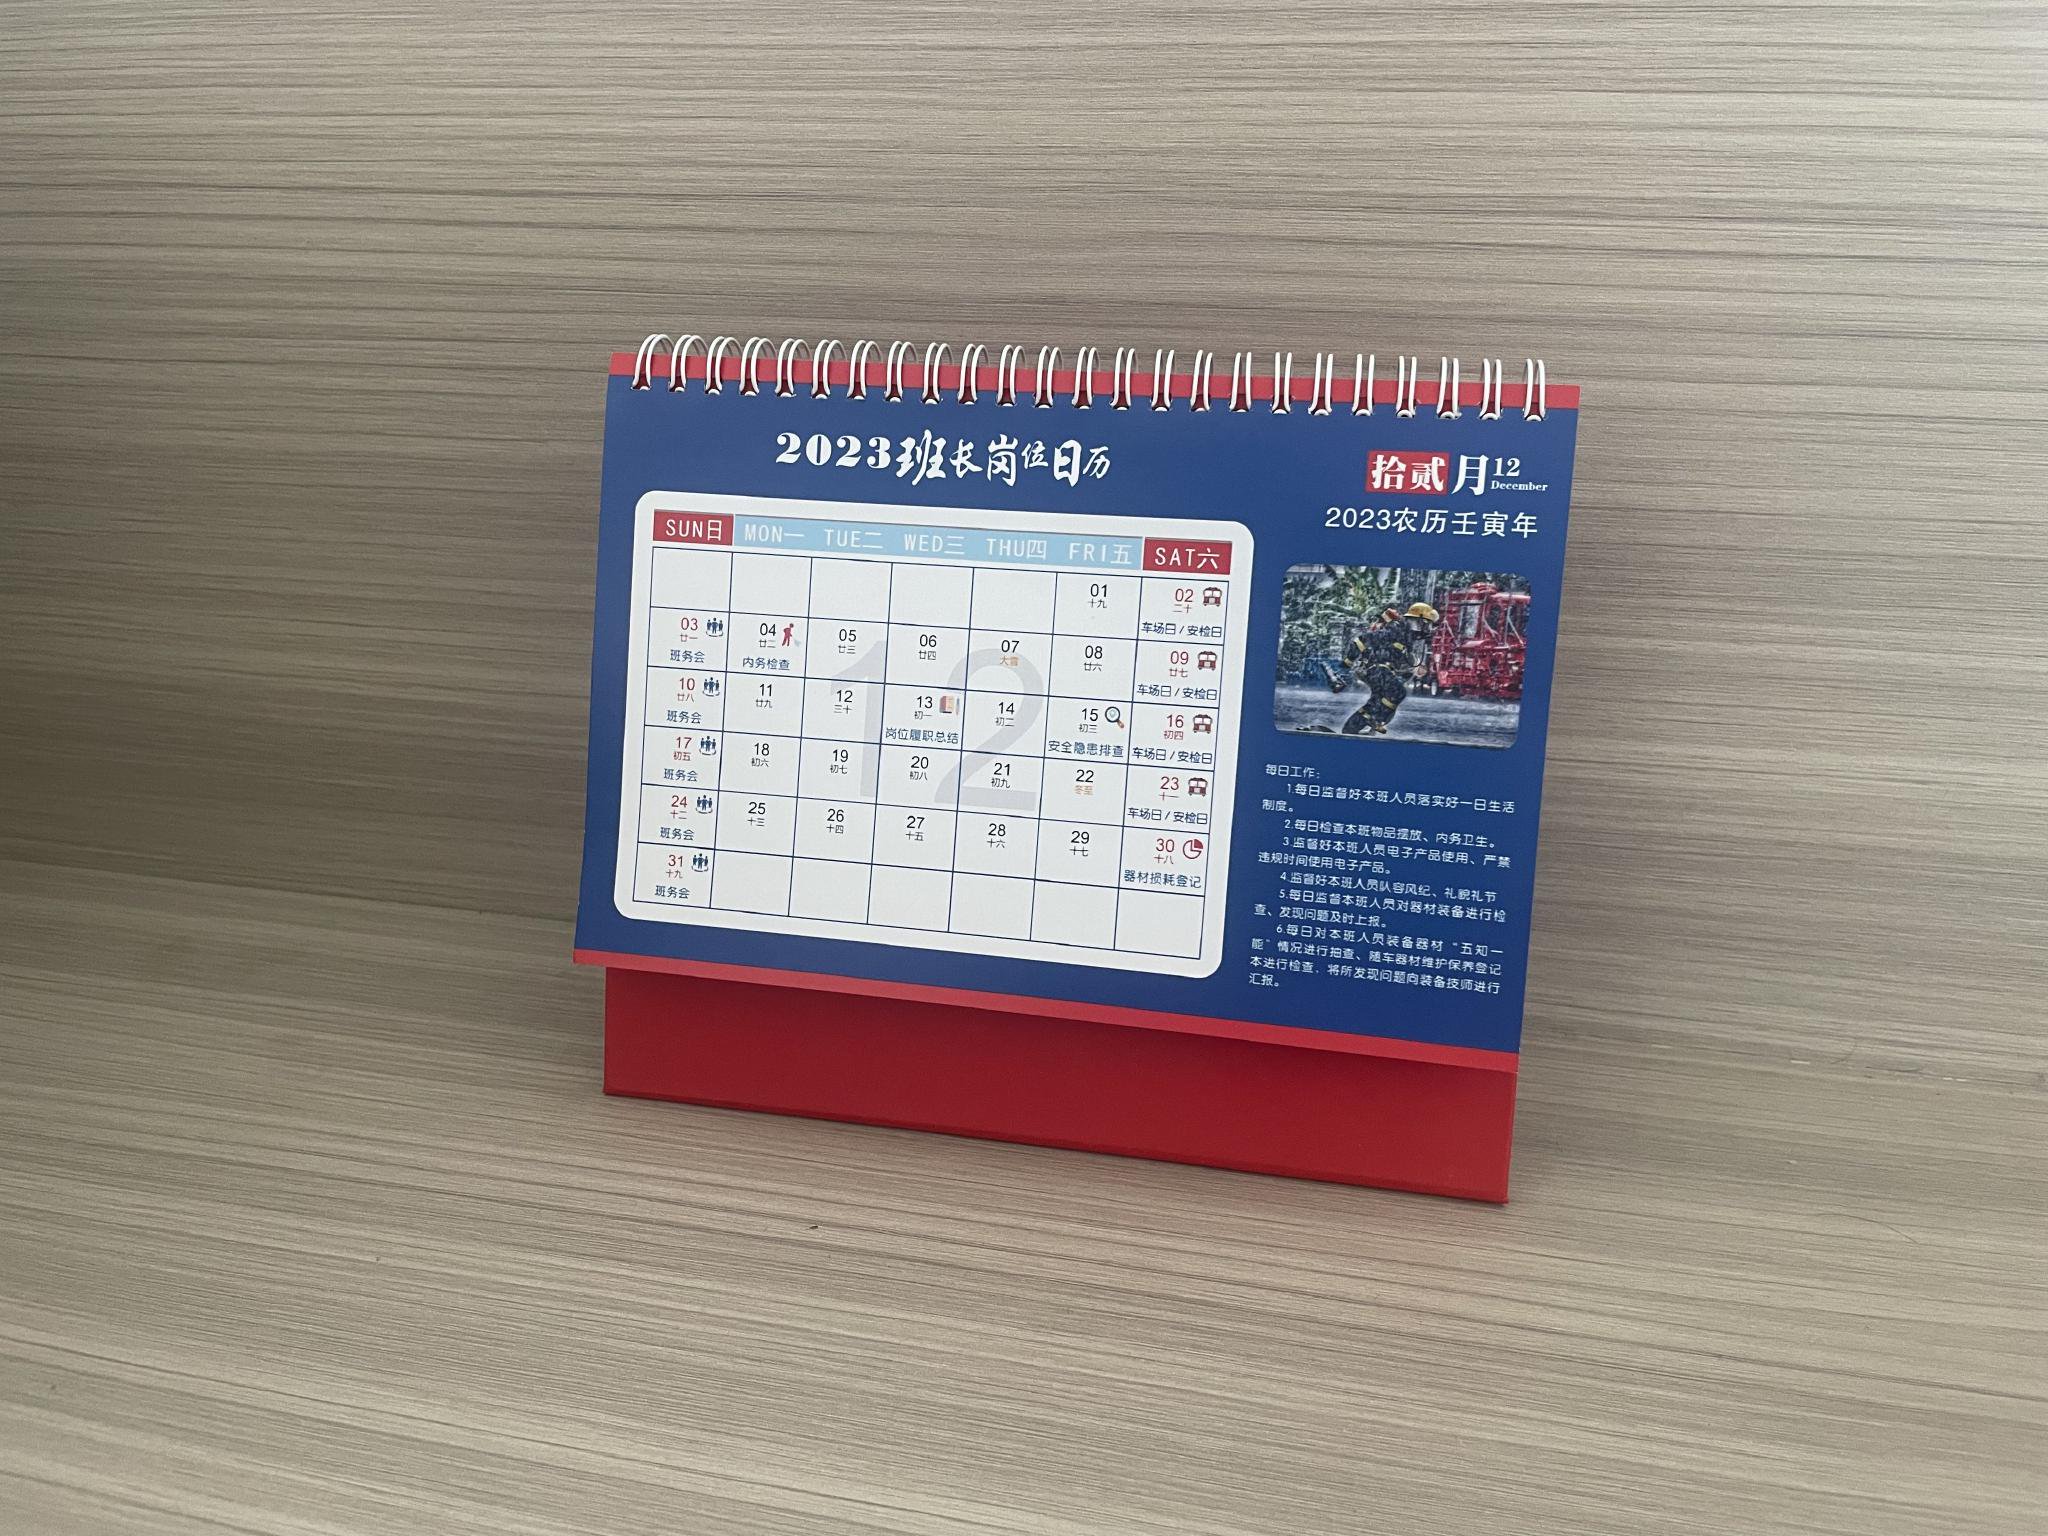 張誌添桌上的日曆，標註著各種工作規劃。 新京報記者 彭衝 攝